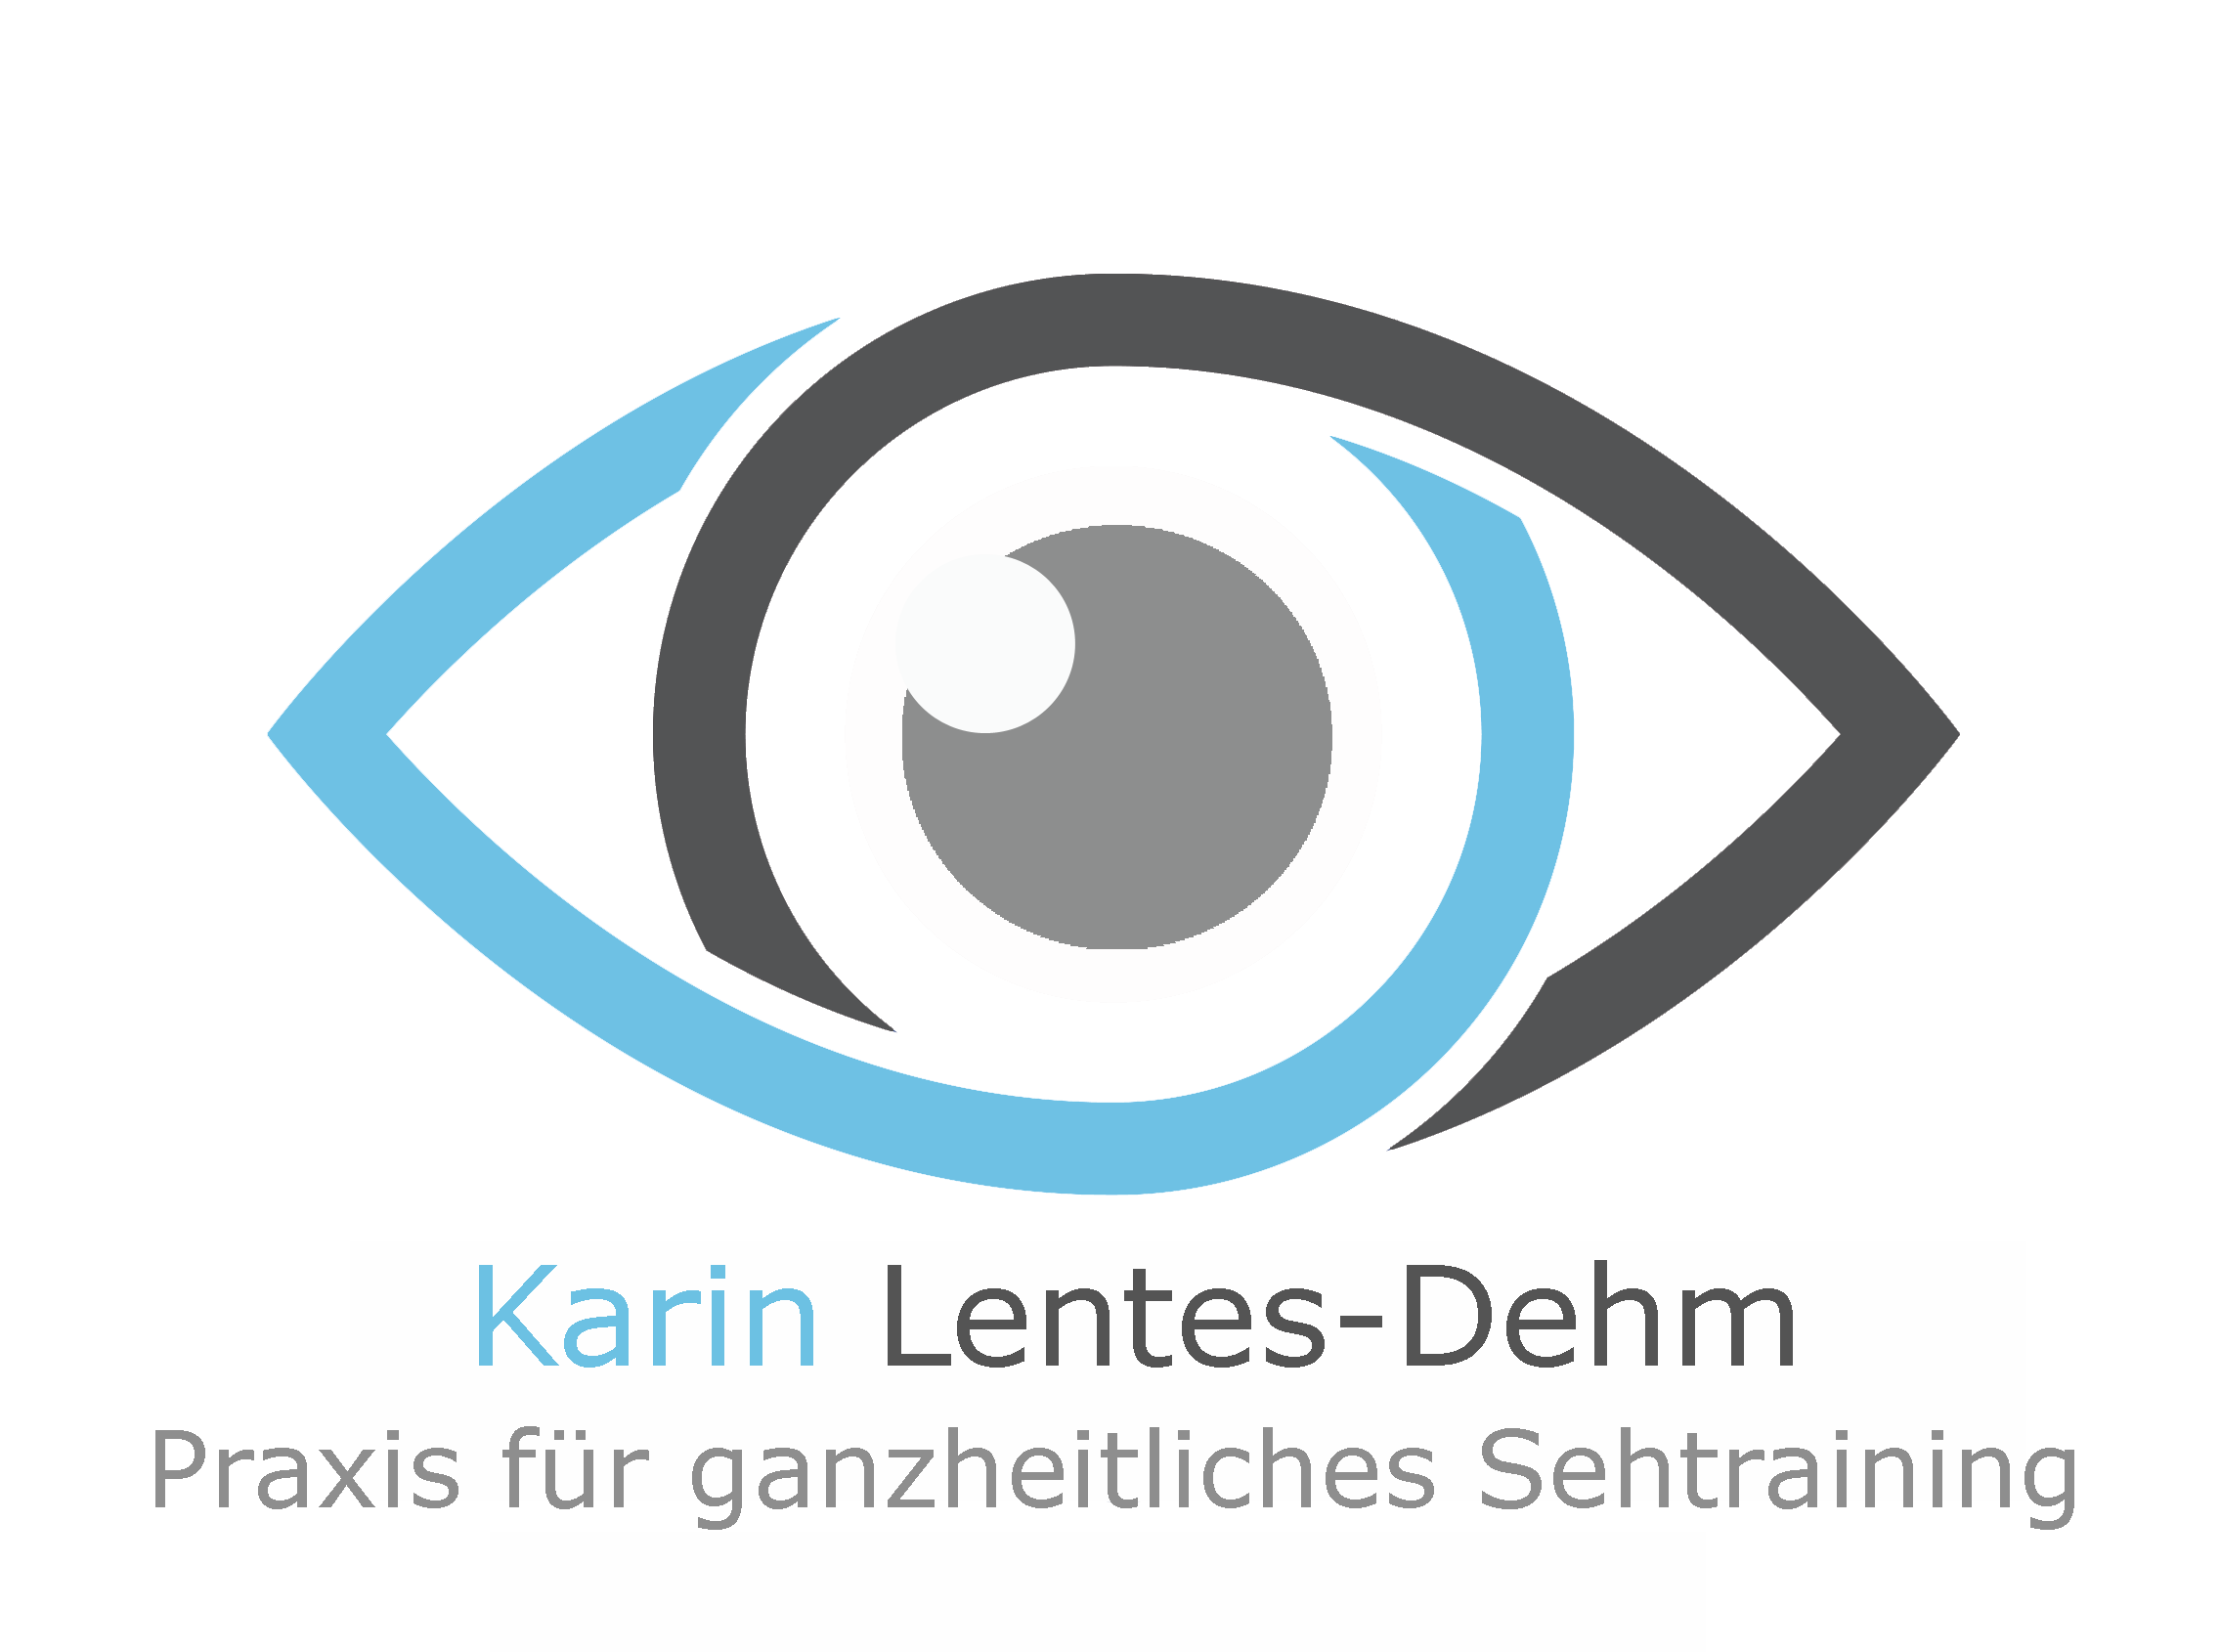 Karin Lentes-Dehm